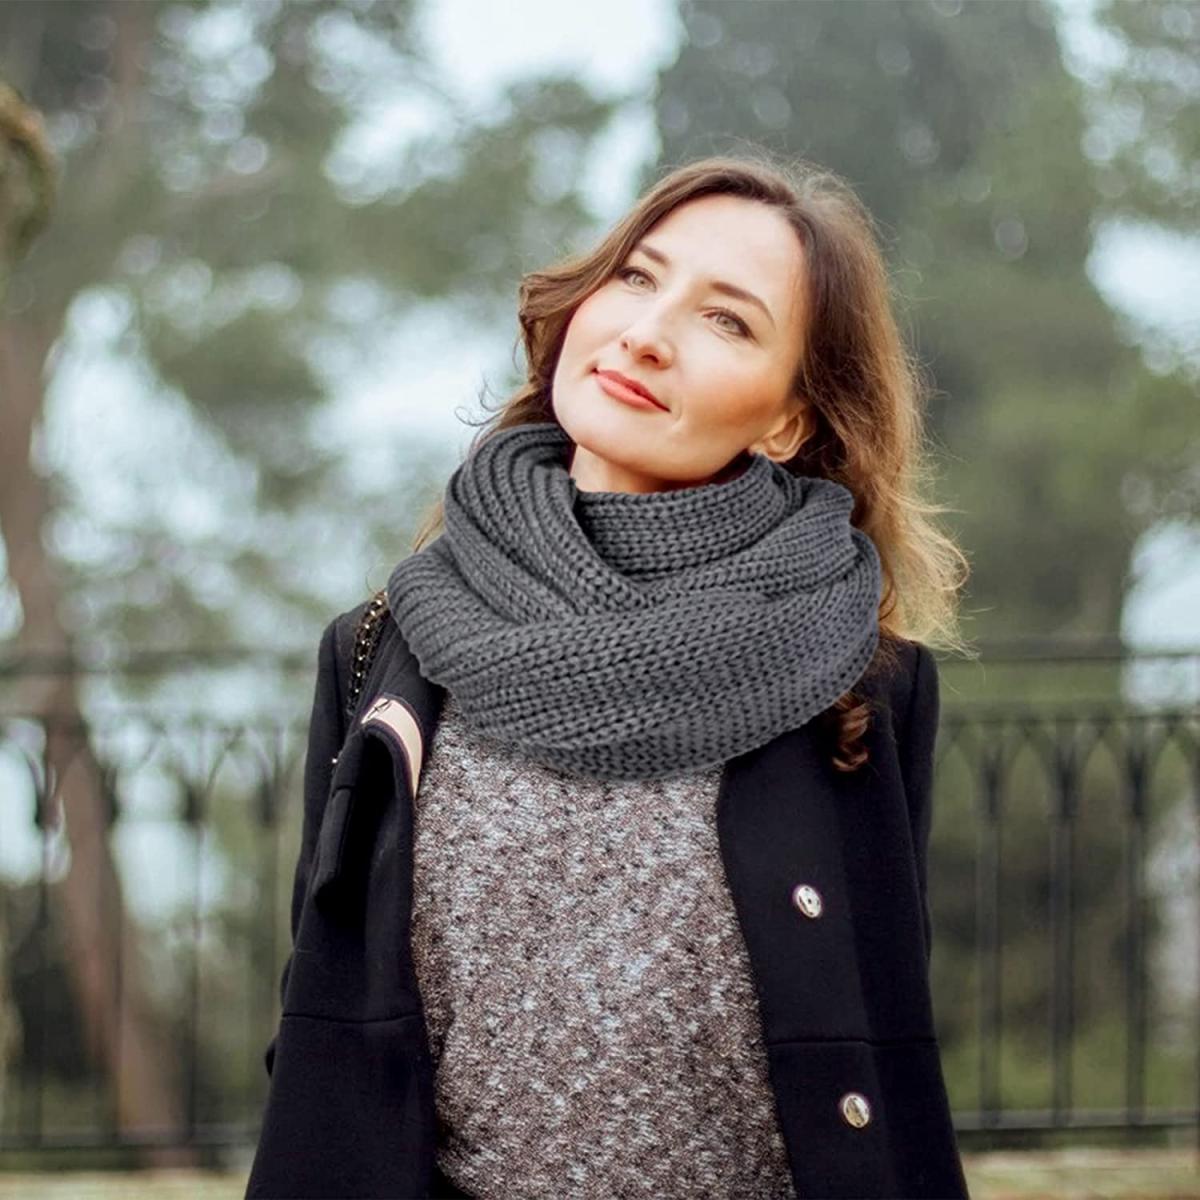 5 bufandas para combinar tus atuendos otoño que encuentras oferta en Amazon - La Opinión